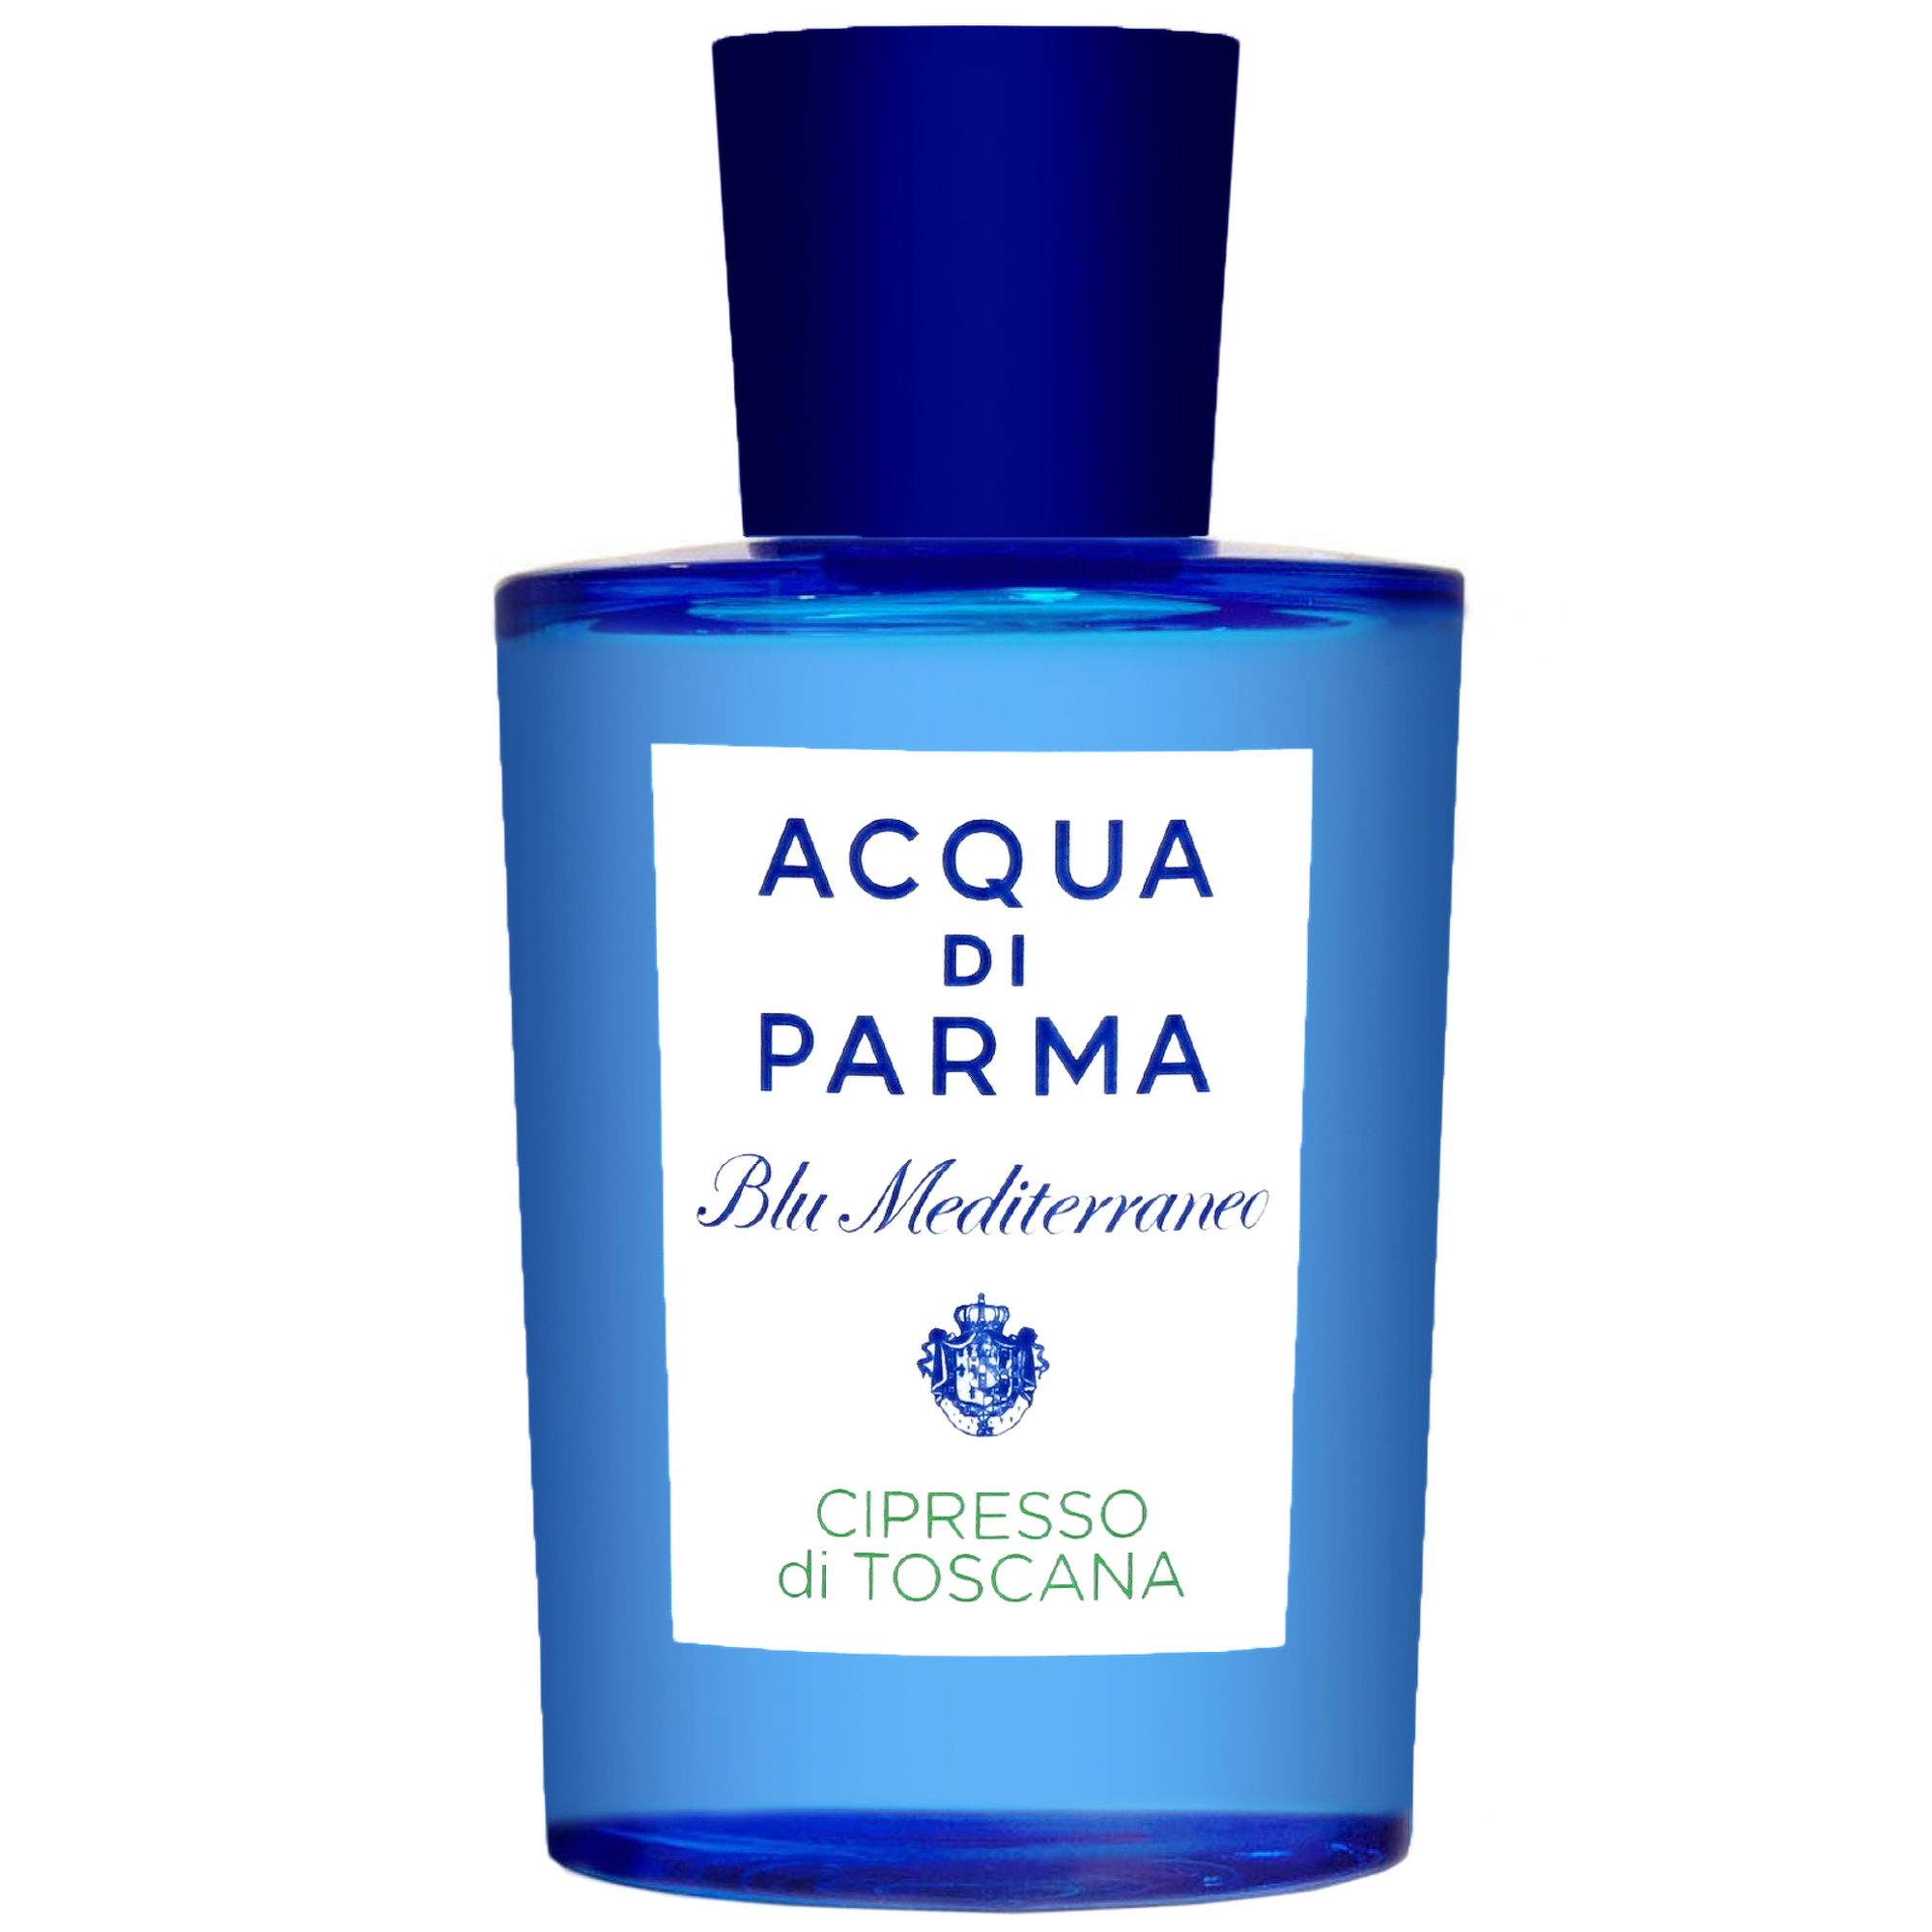 Image of Acqua Di Parma Blu Mediterraneo - Cipresso Di Toscana Eau de Toilette Natural Spray 150ml